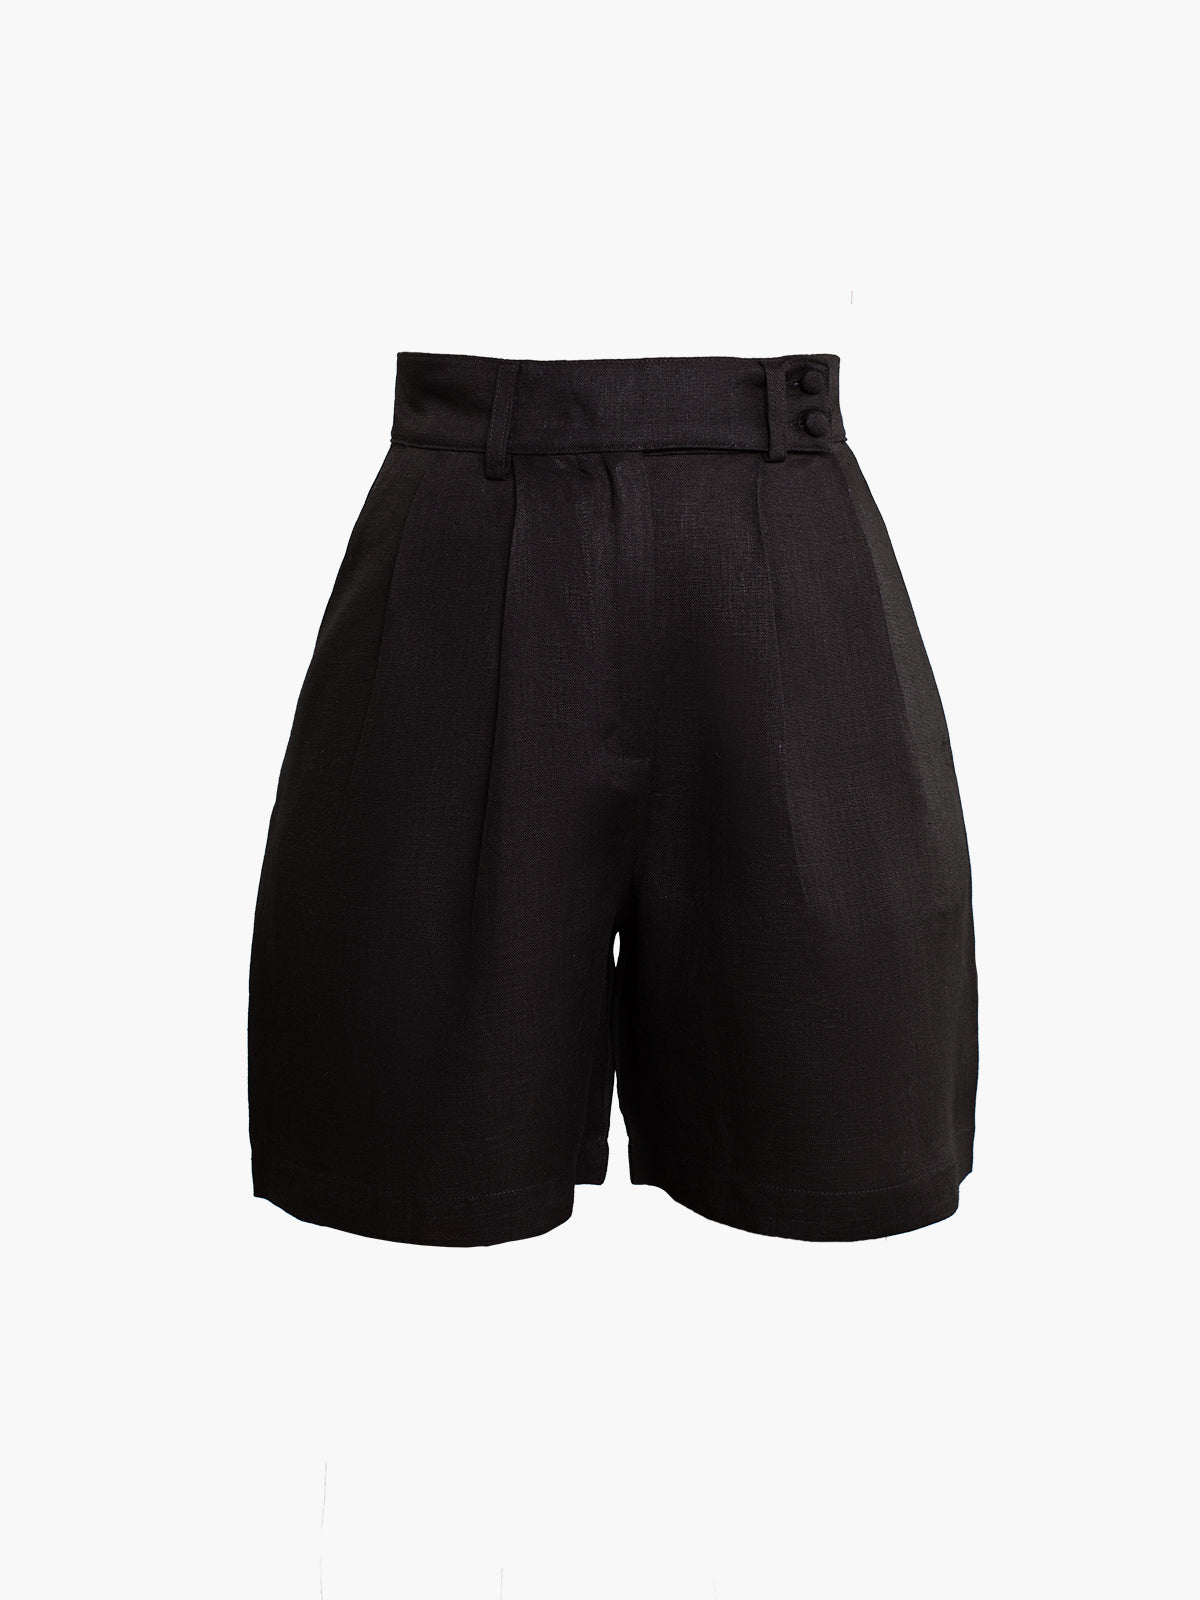 Coral Shorts | Black Coral Shorts | Black